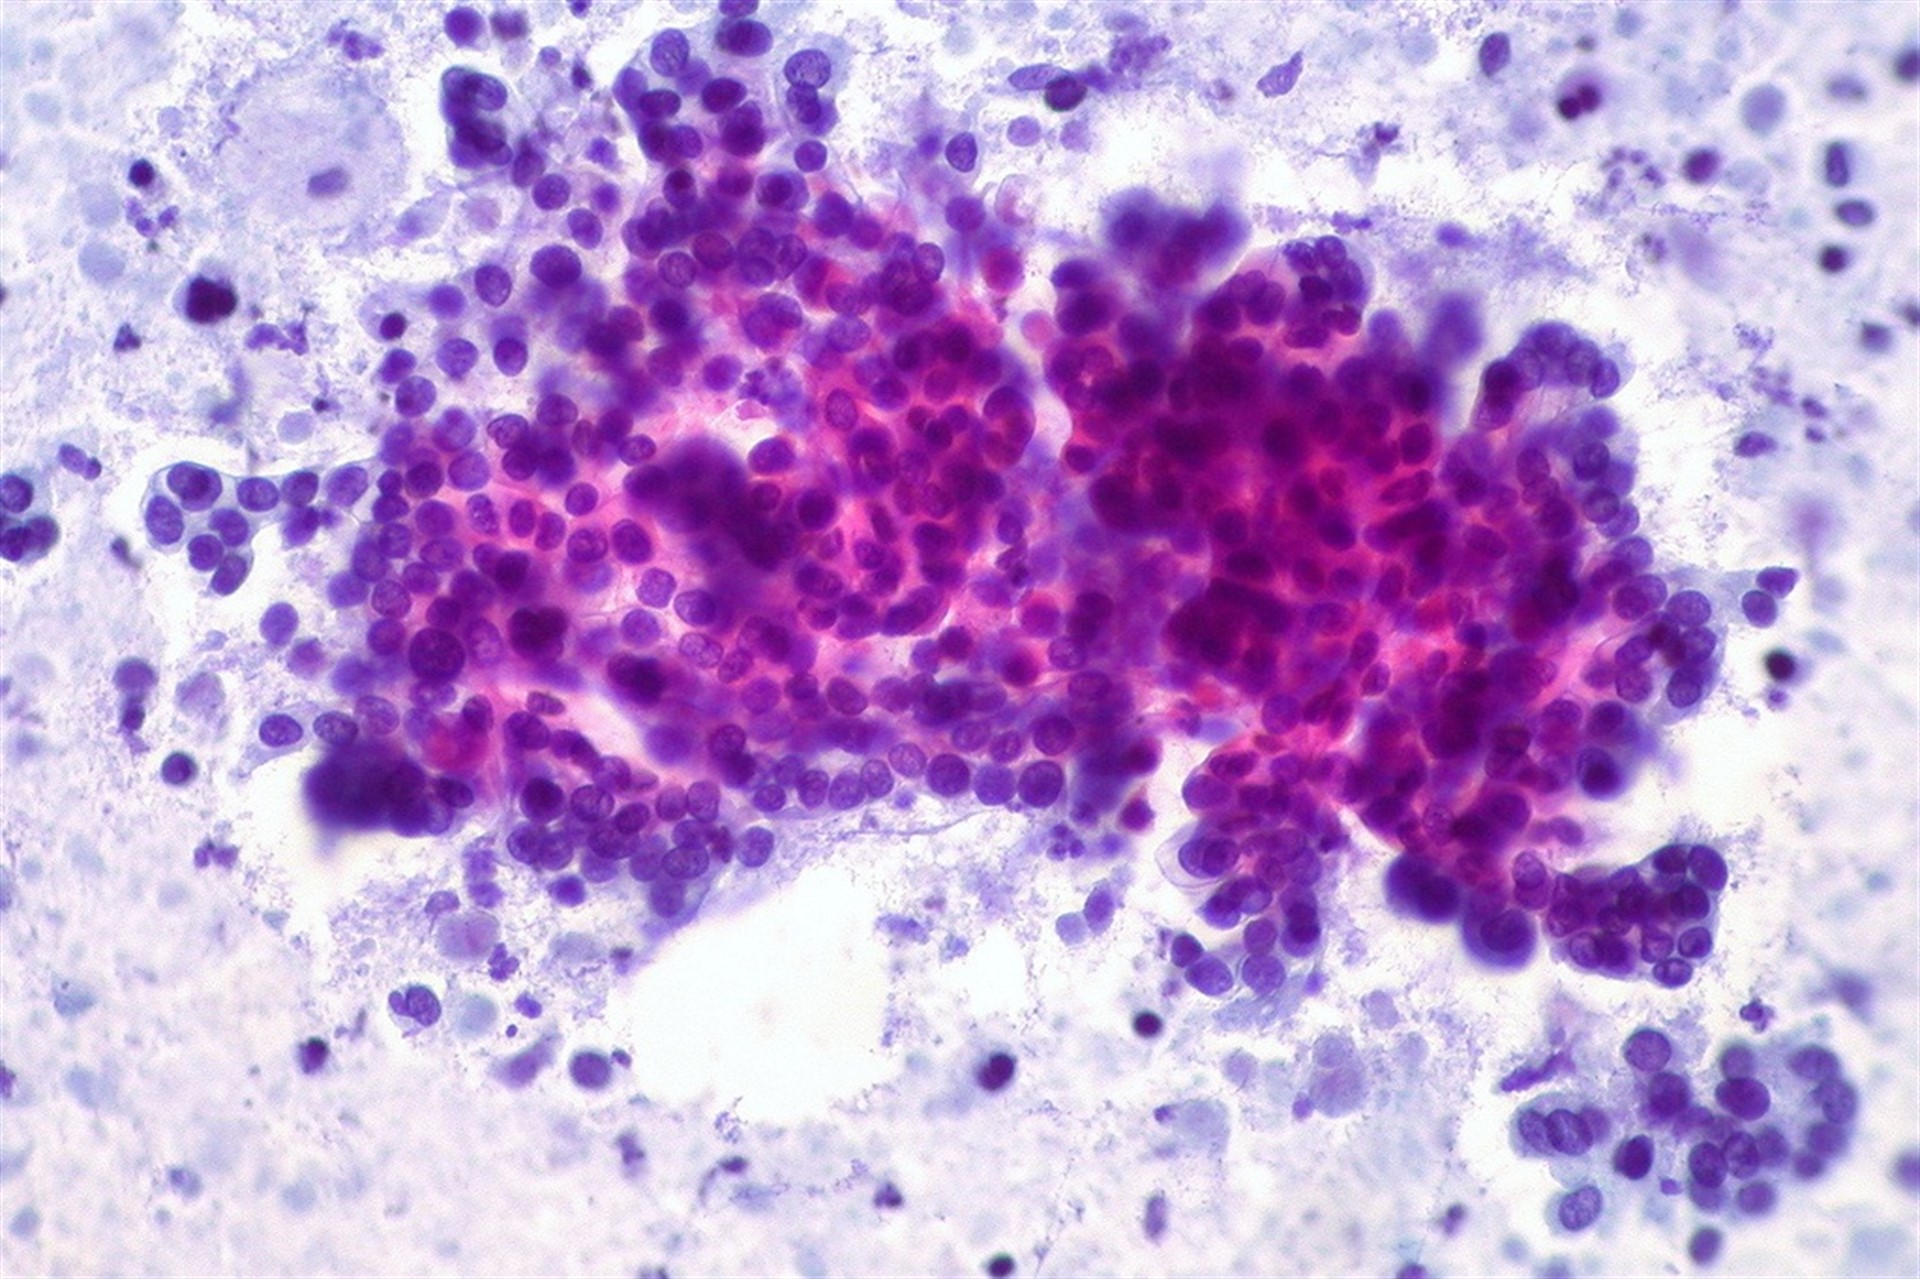 Descubren el origen de la capa celular que ‘oculta’ el cáncer de estómago